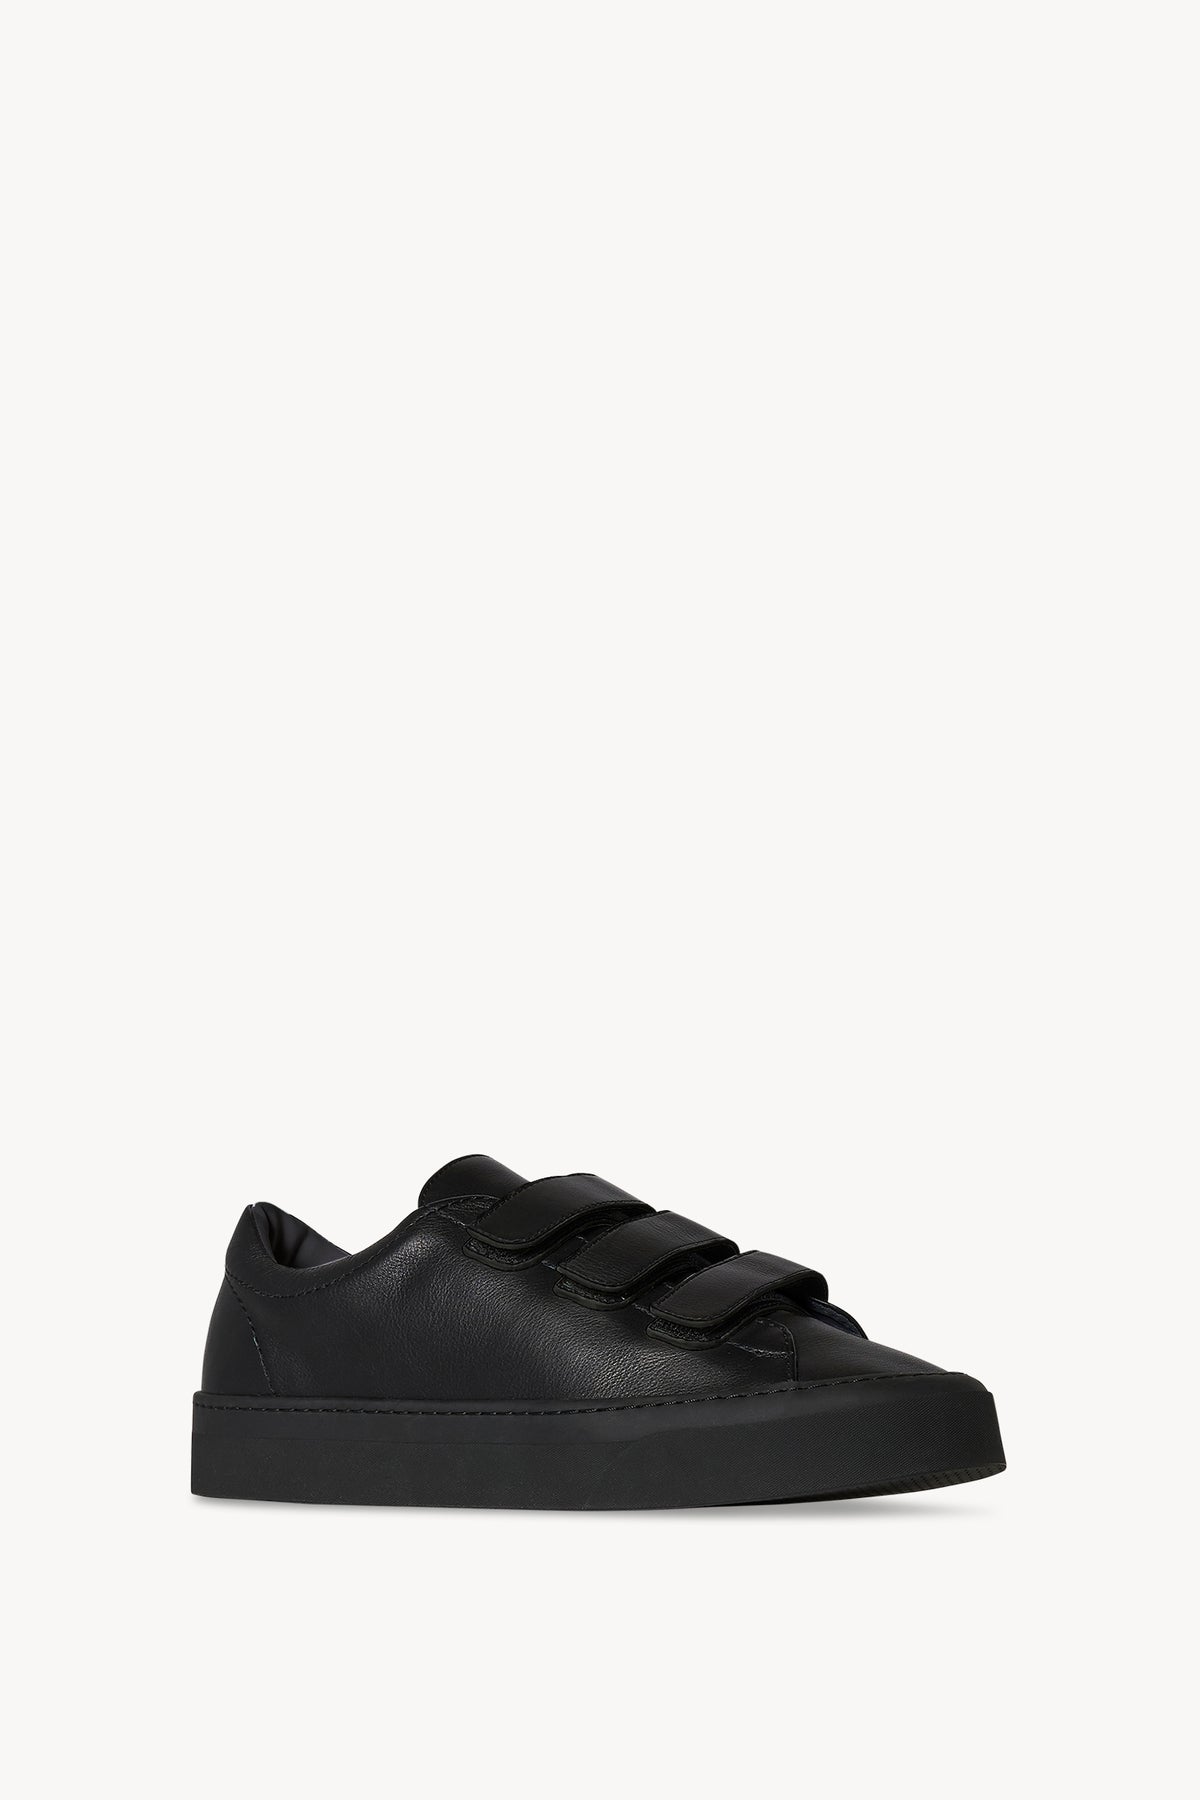 Basket Noir, Sneakers Noir